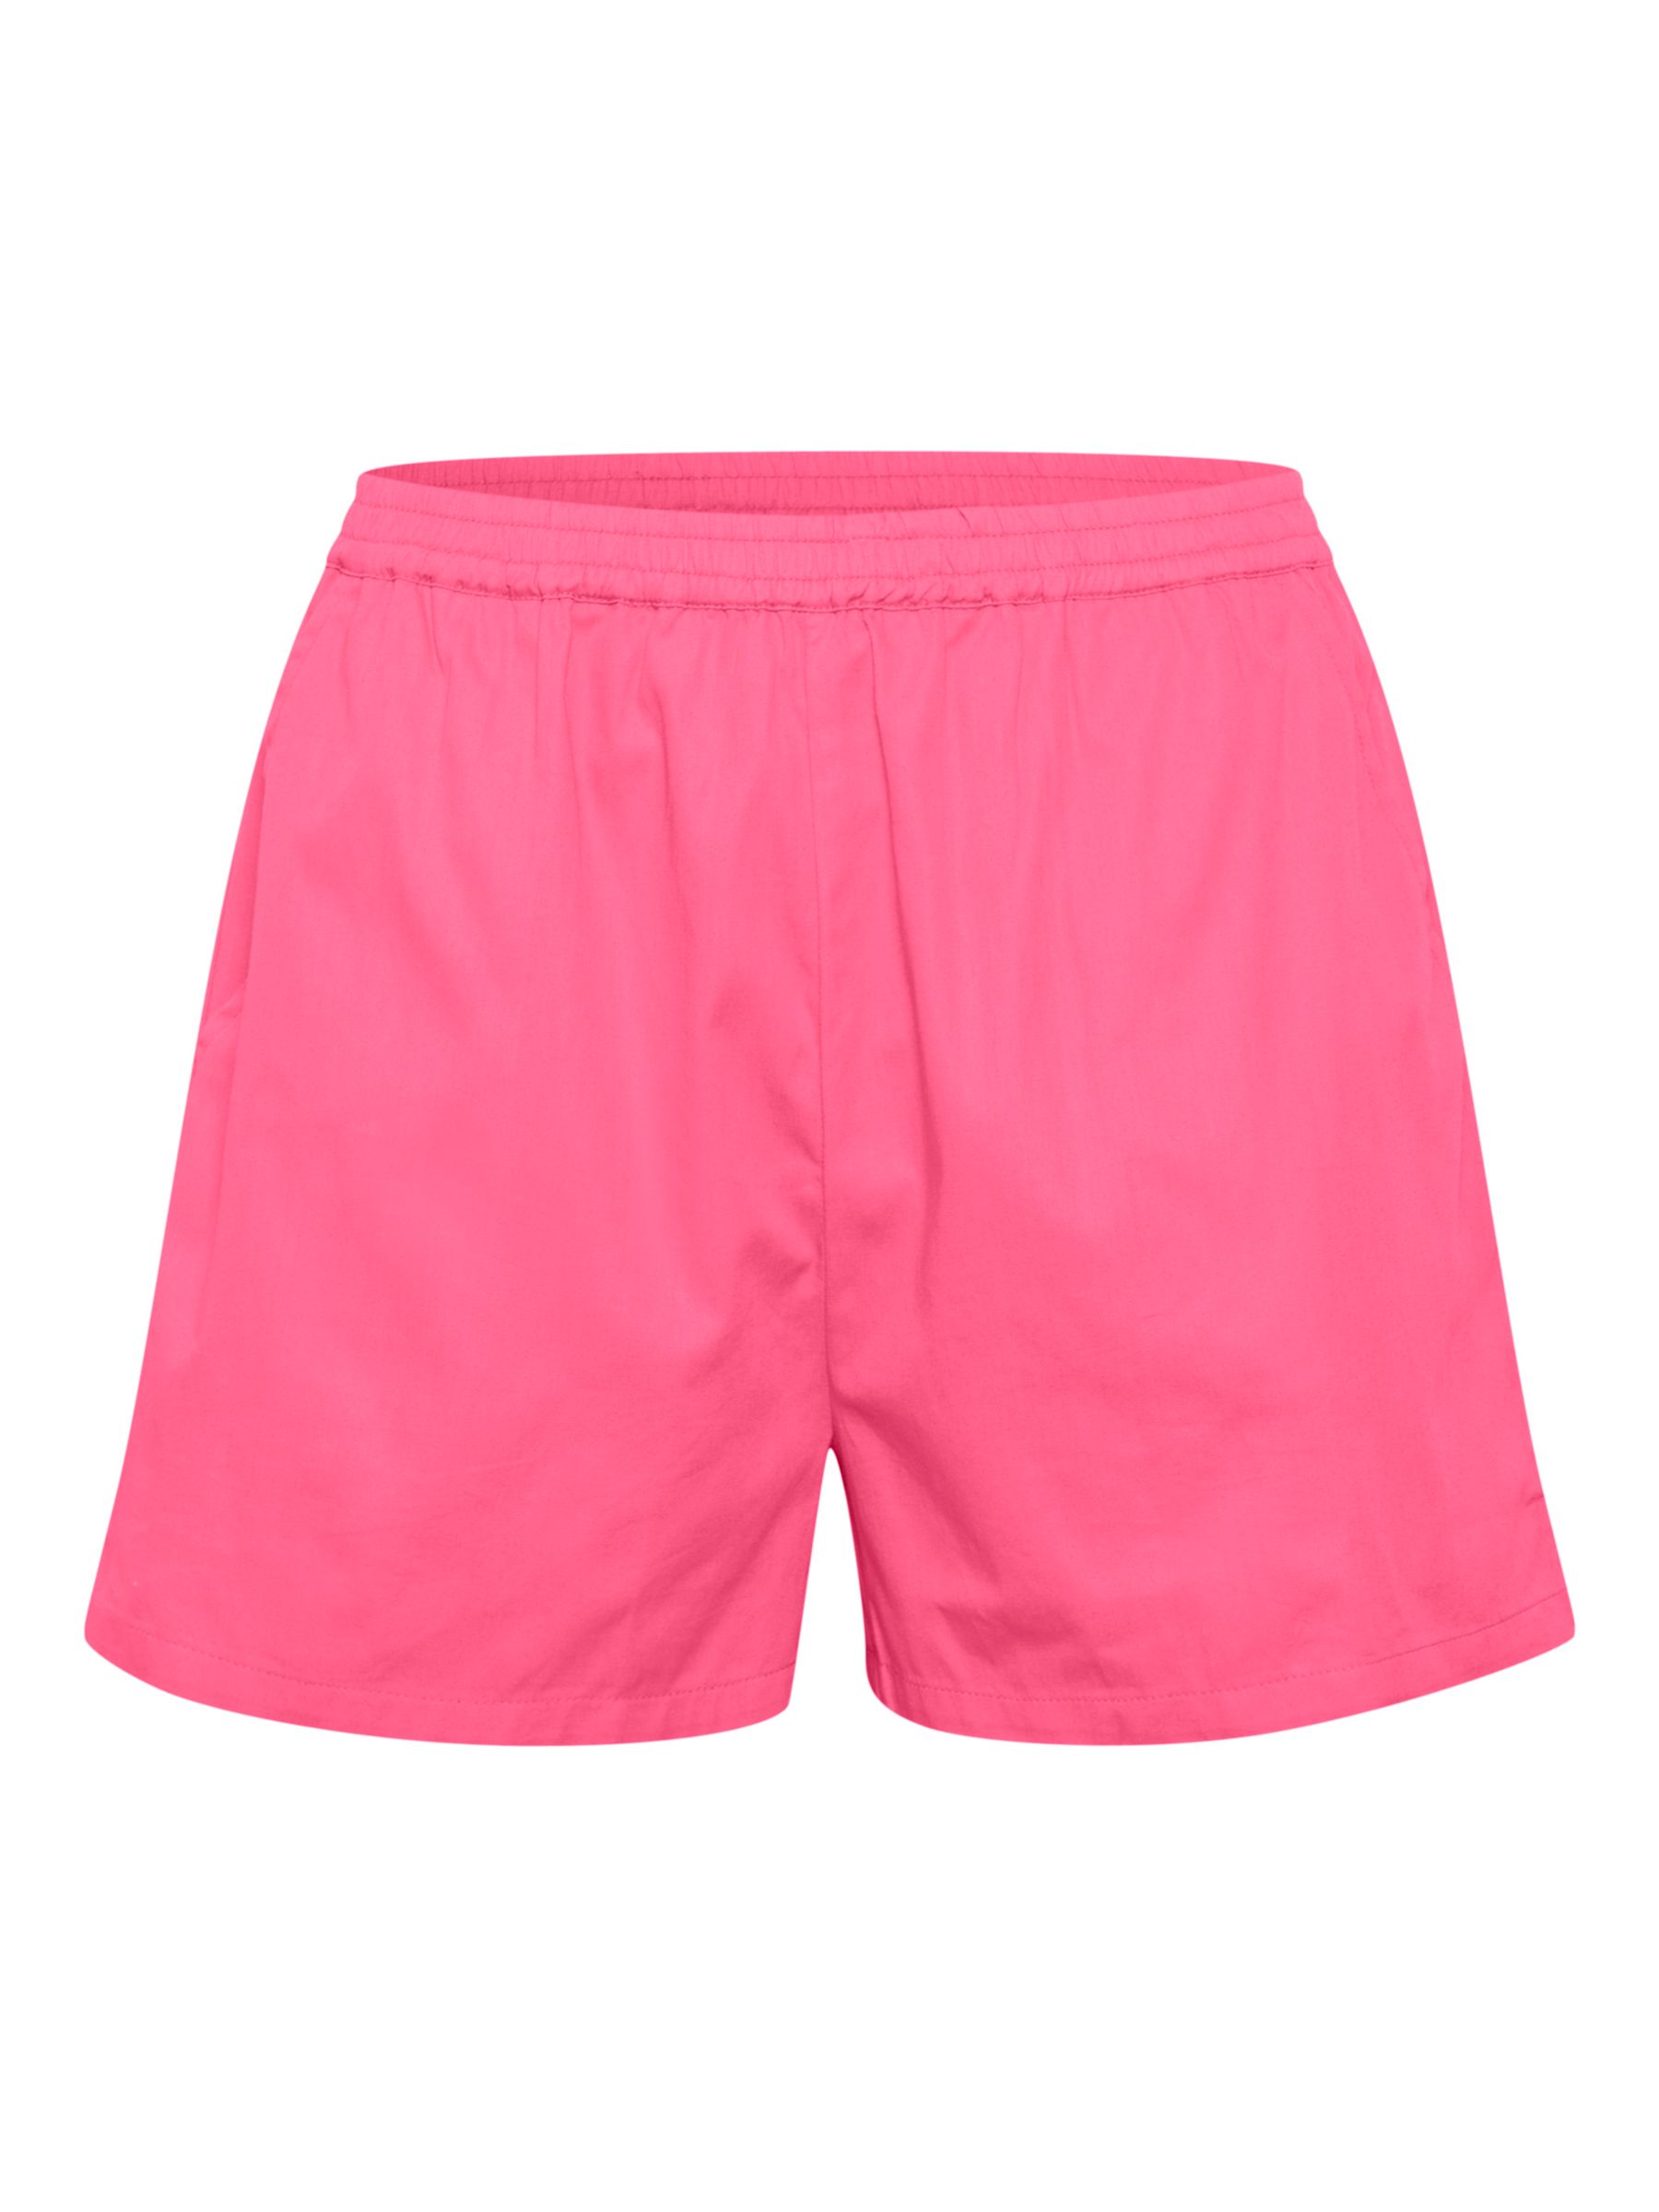 Buy Saint Tropez Uflora Shorts Online at johnlewis.com